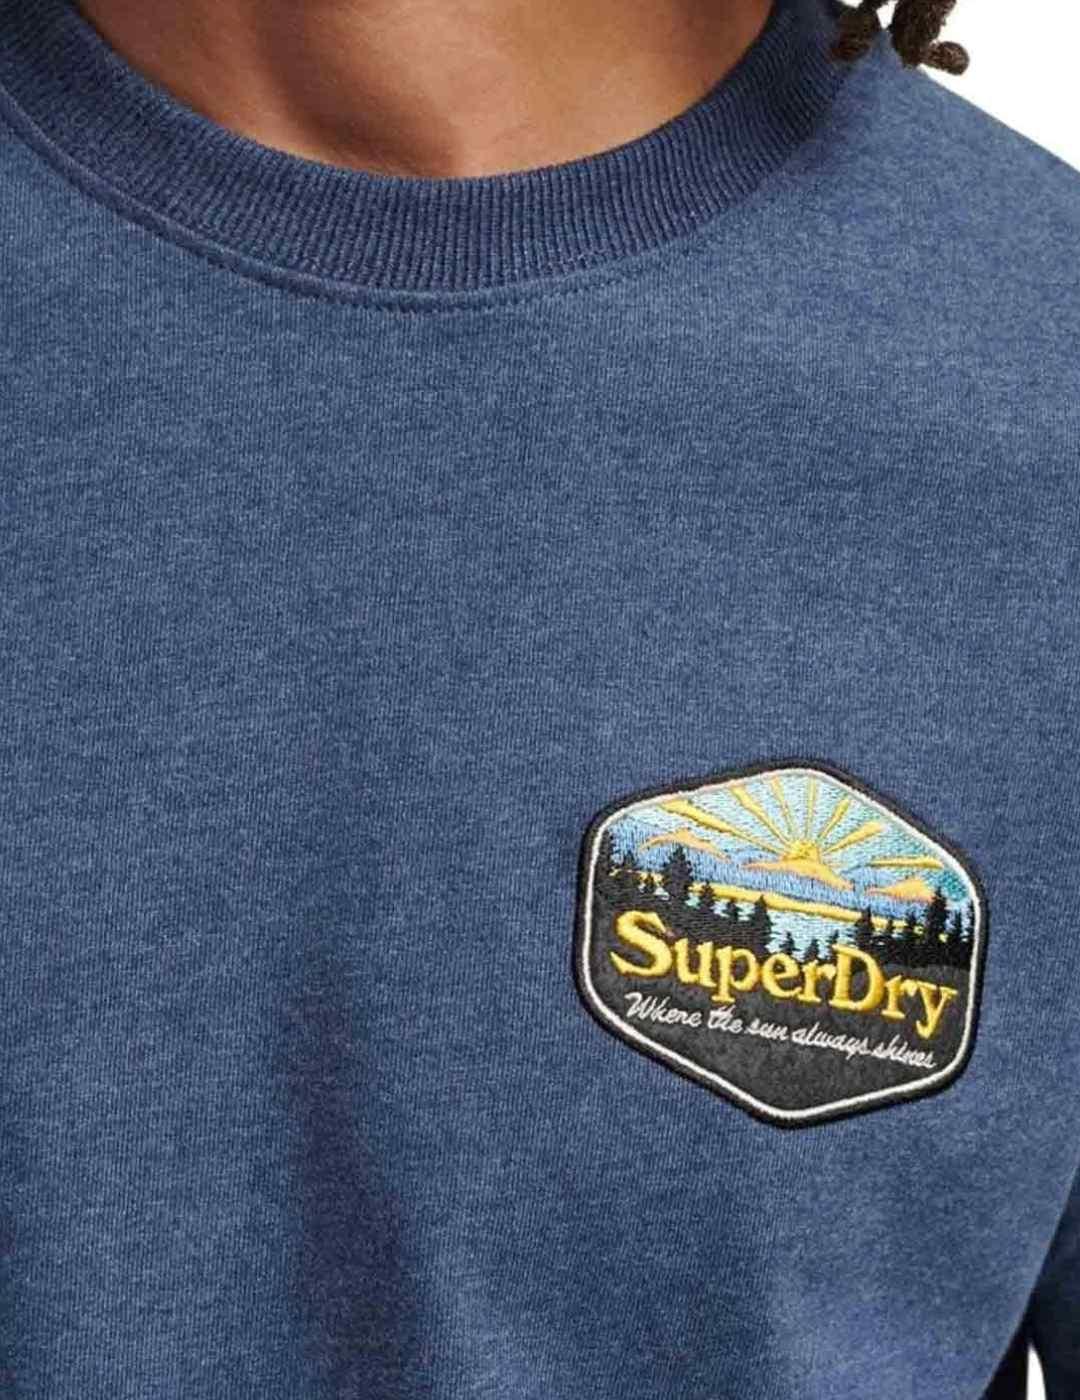 Camiseta Superdry indigo para hombre -b